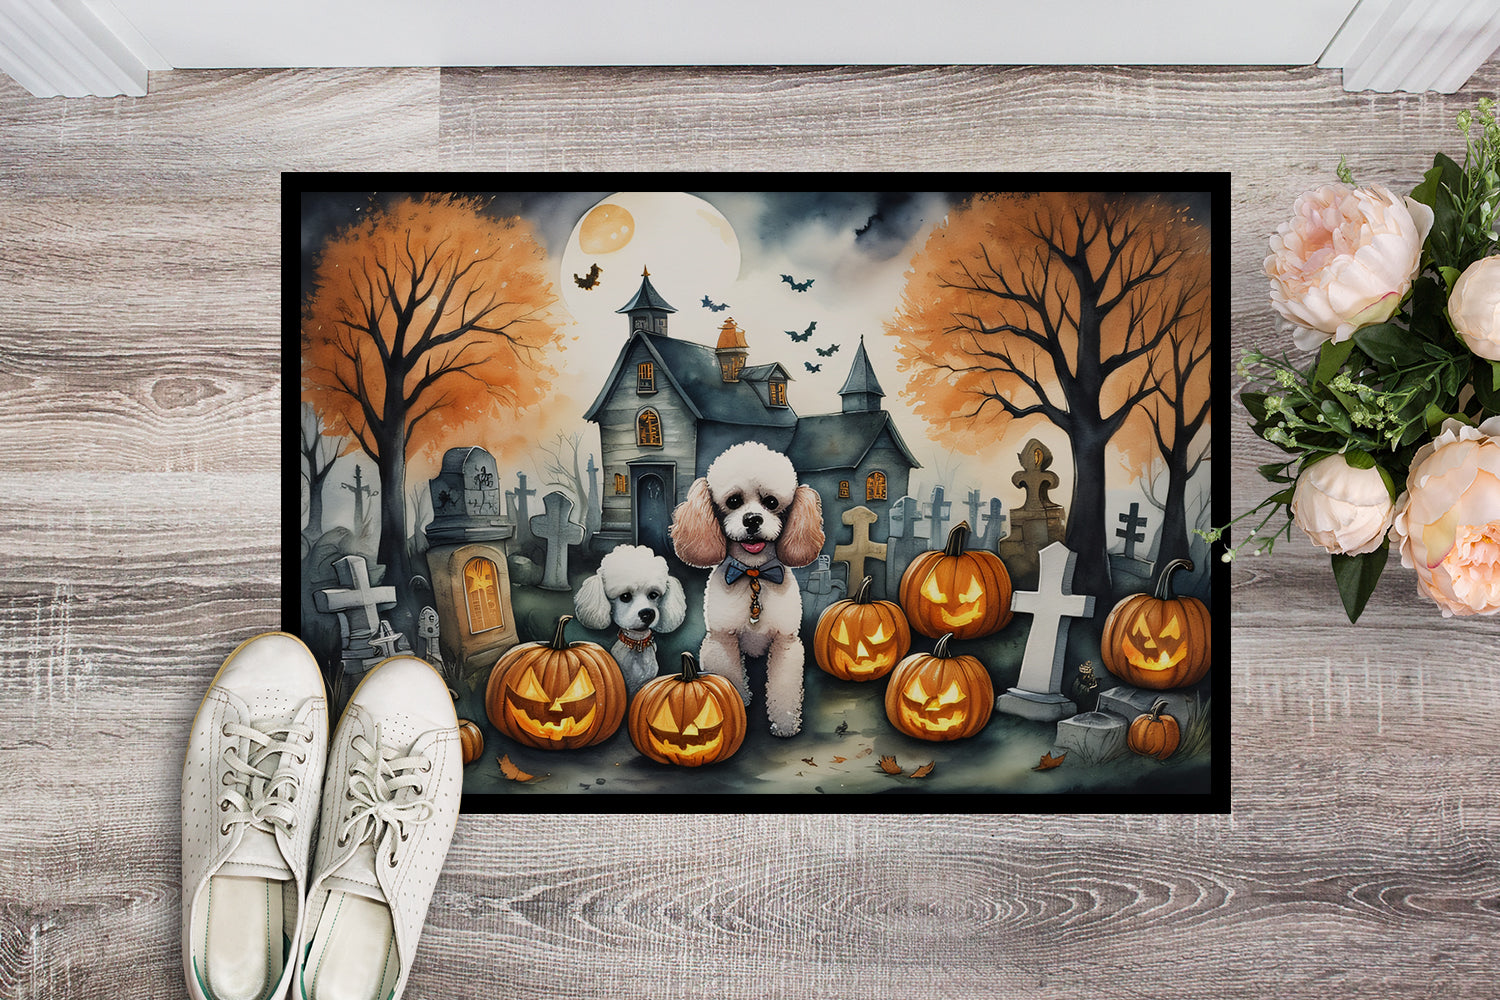 Poodle Spooky Halloween Doormat 18x27